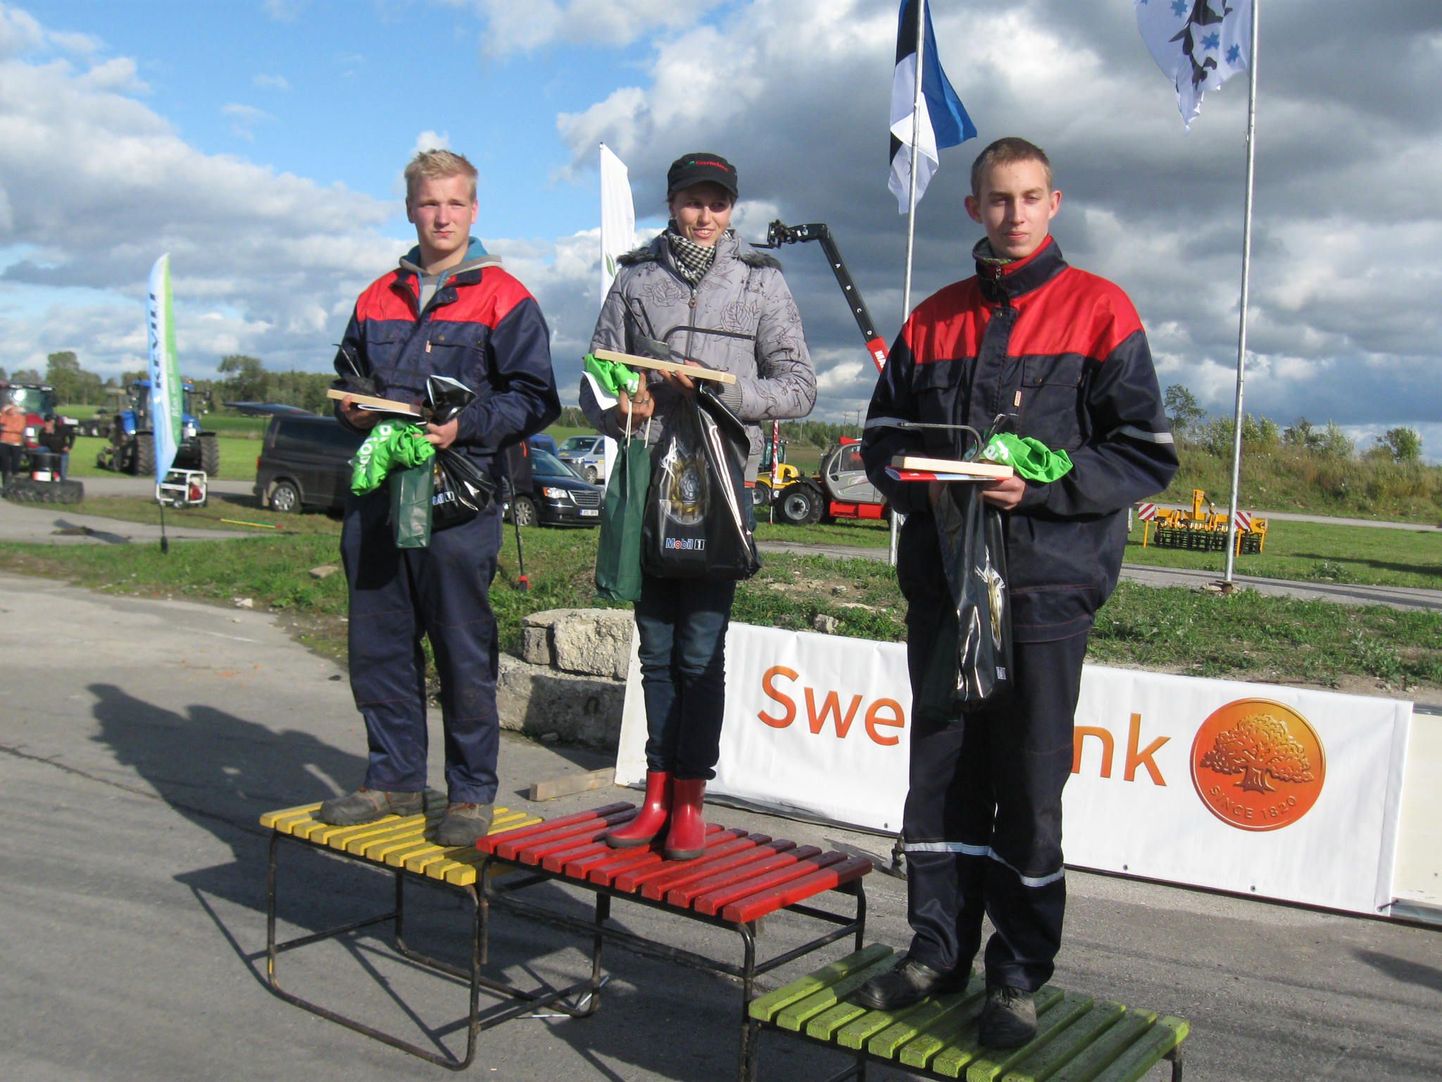 Olustvere õpilased Keit Uusen (vasakul) ja Priit Haavapuu tulid noorkündjate arvestuses vastavalt teiseks ning kolmandaks. Esikoha võitis Pille-Riin Reinaus Kaspar Järvala künniklubist.